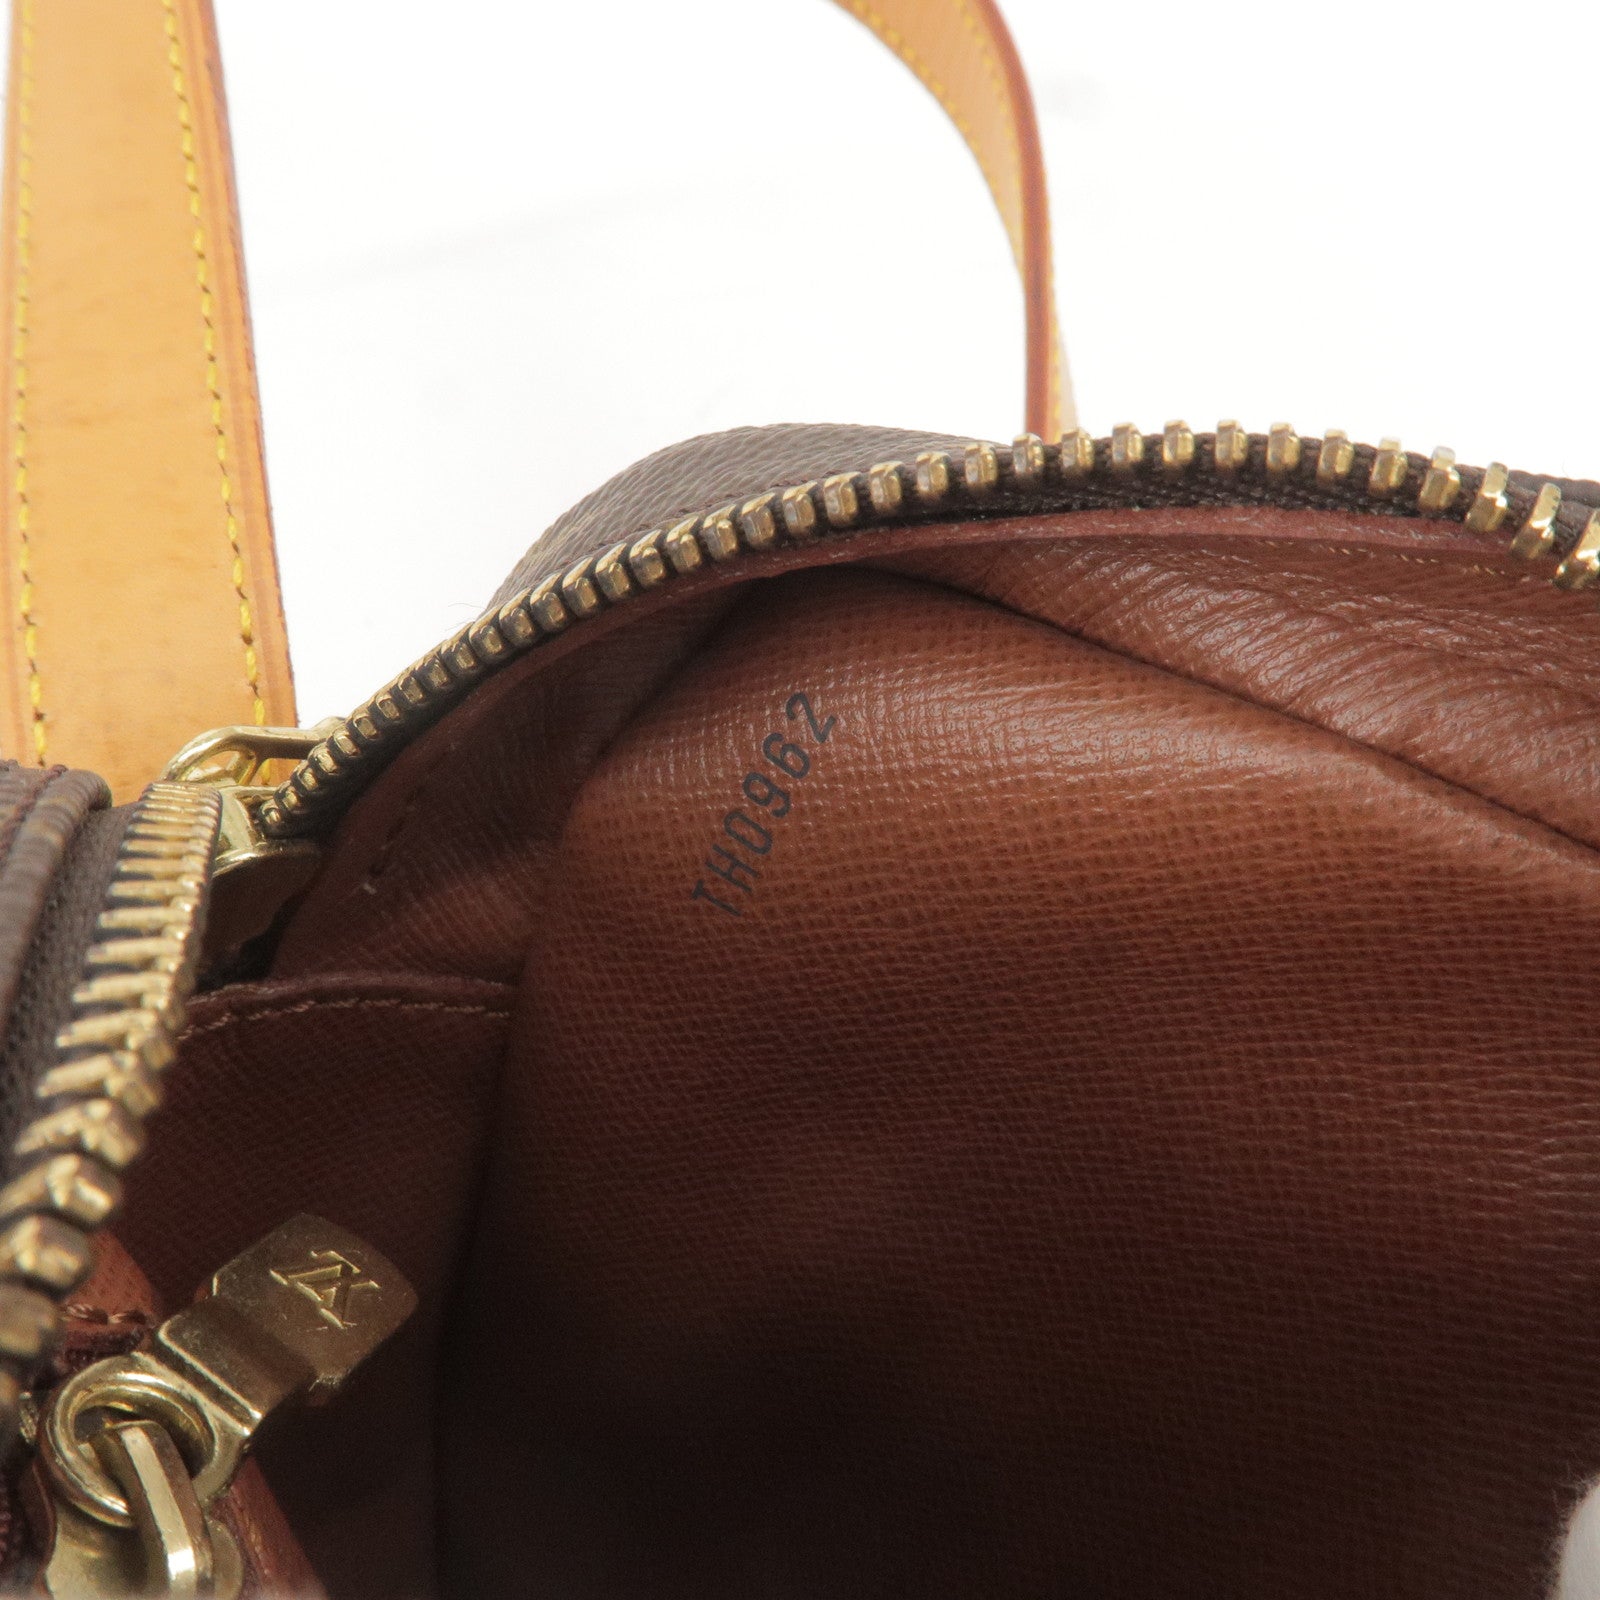 Louis Vuitton Jeune Fille Gm Shoulder Bag Th0962 Purse Monogram M51225